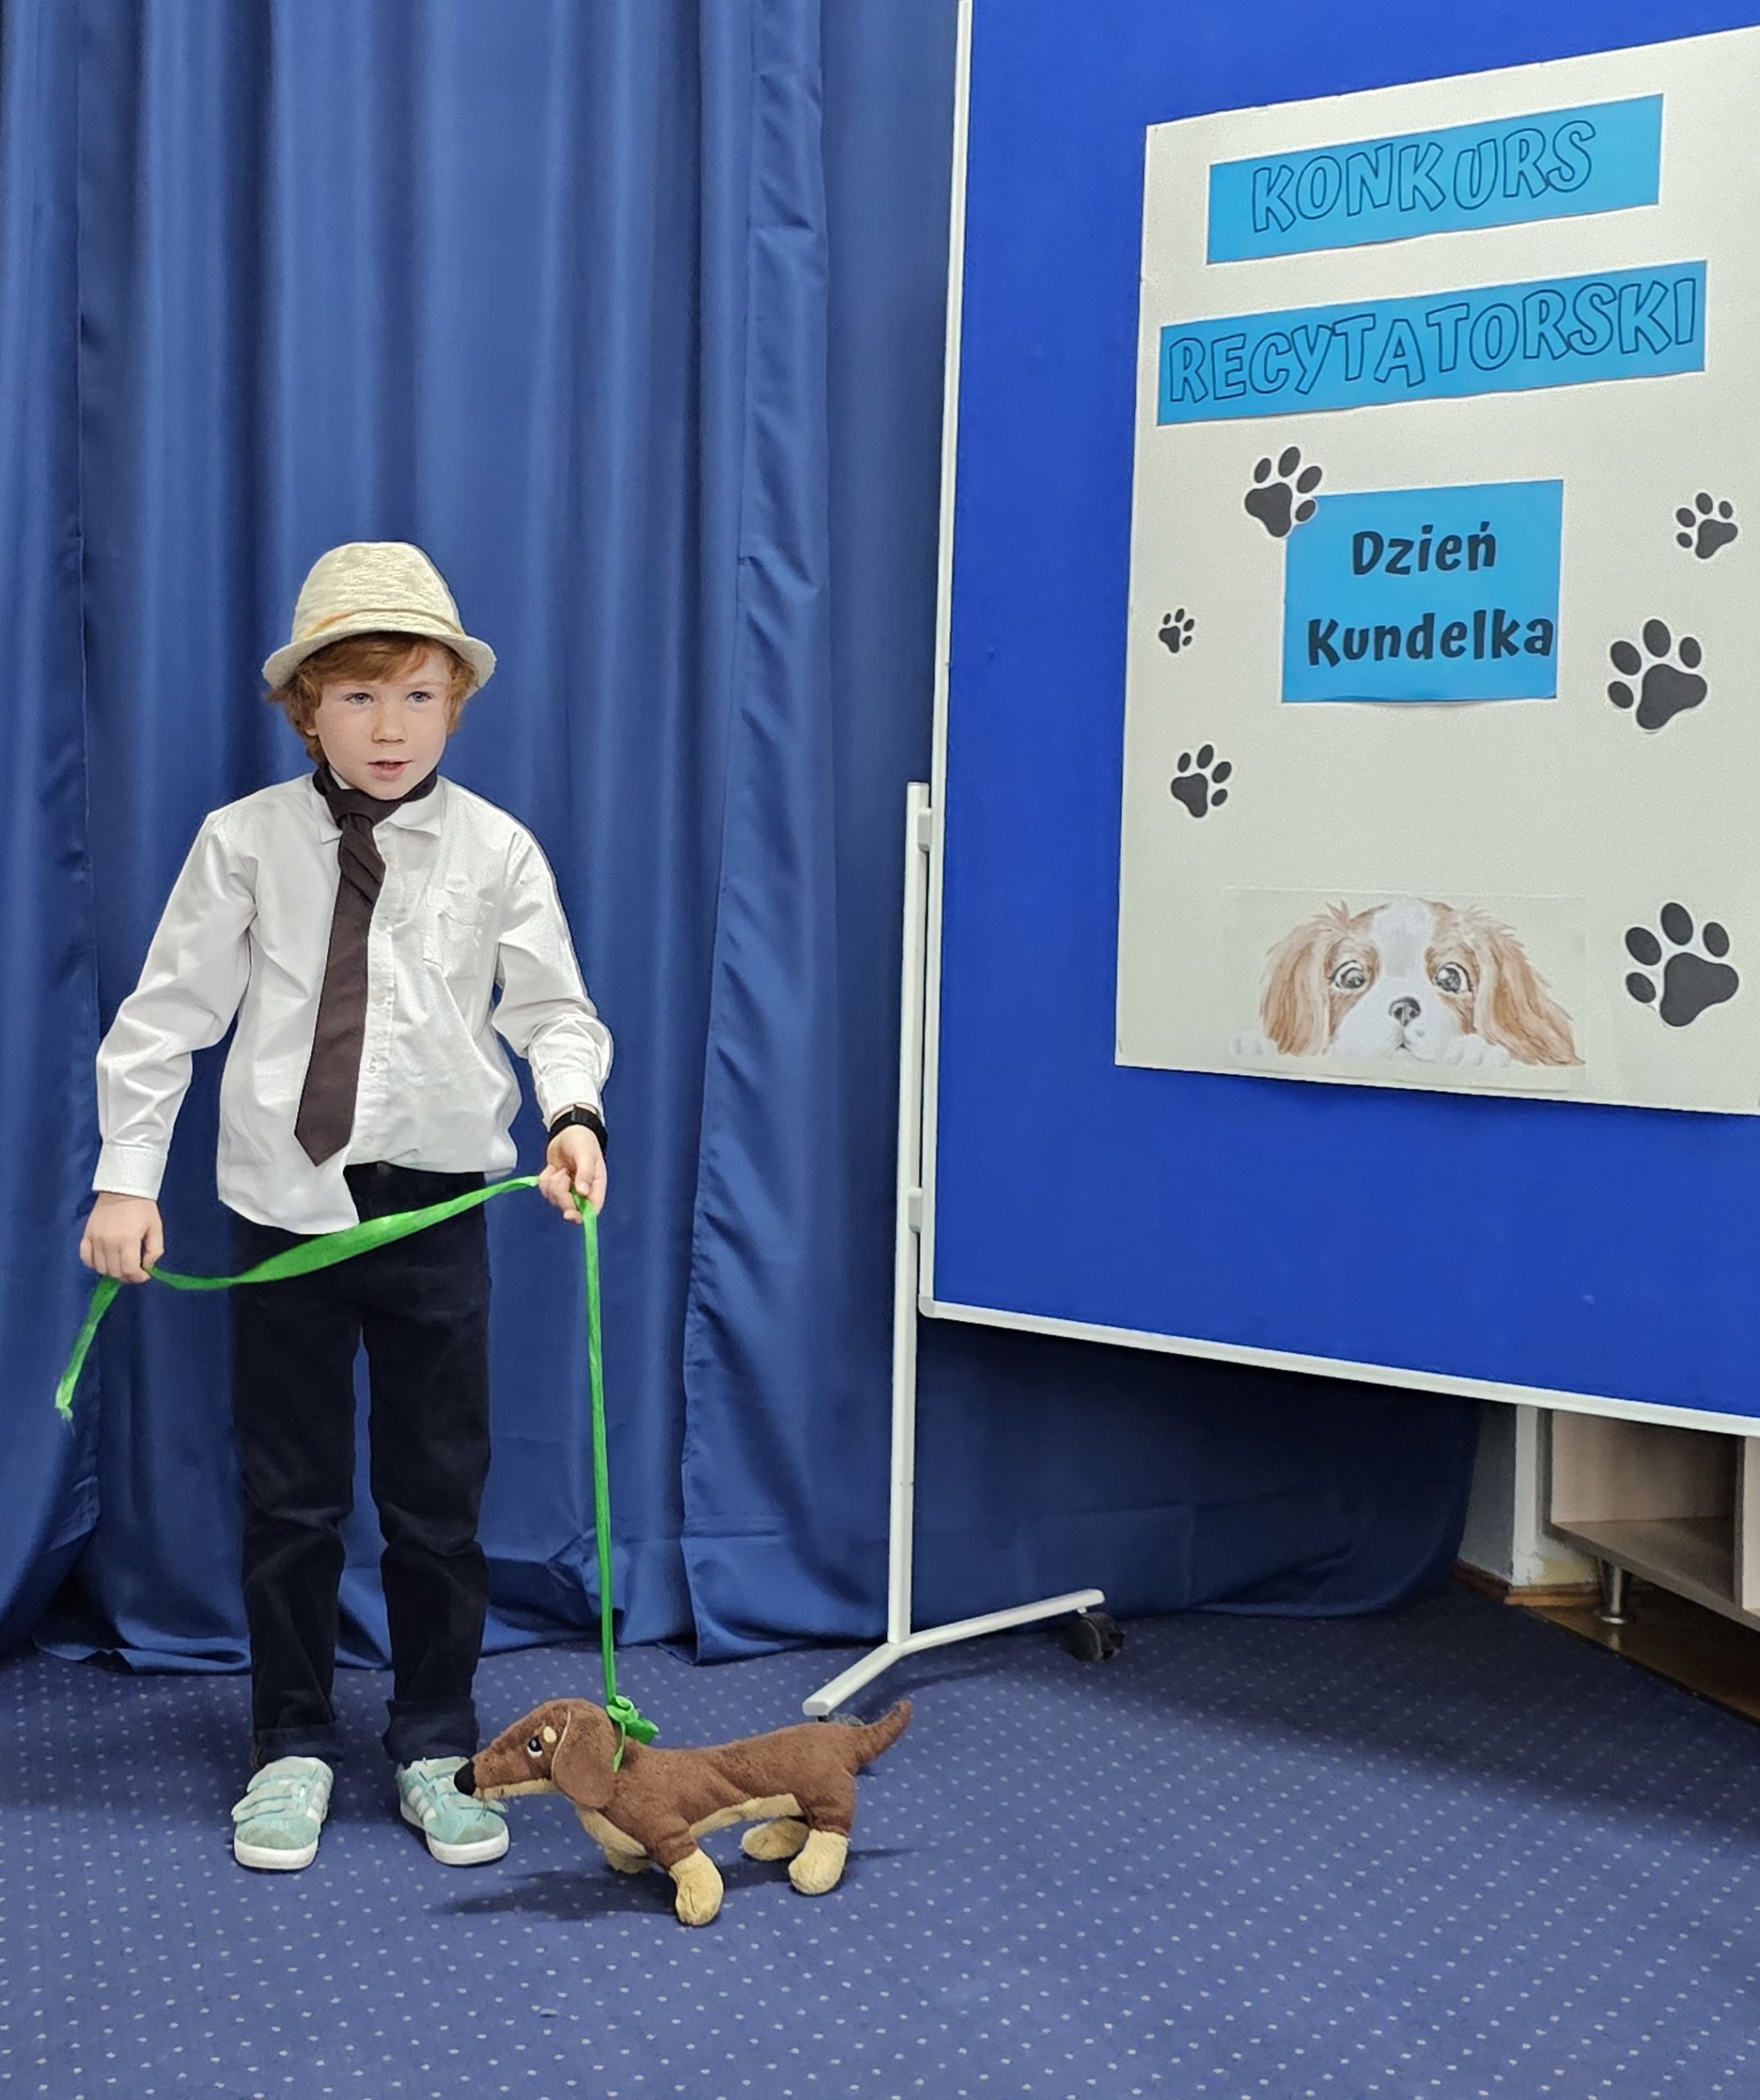 W sali stoi chłopiec w kapeluszu. W ręku trzyma smycz z przywiązaną maskotką psa. Z boku widać tablicę z napisem: konkurs recytatorski, dzień kundelka